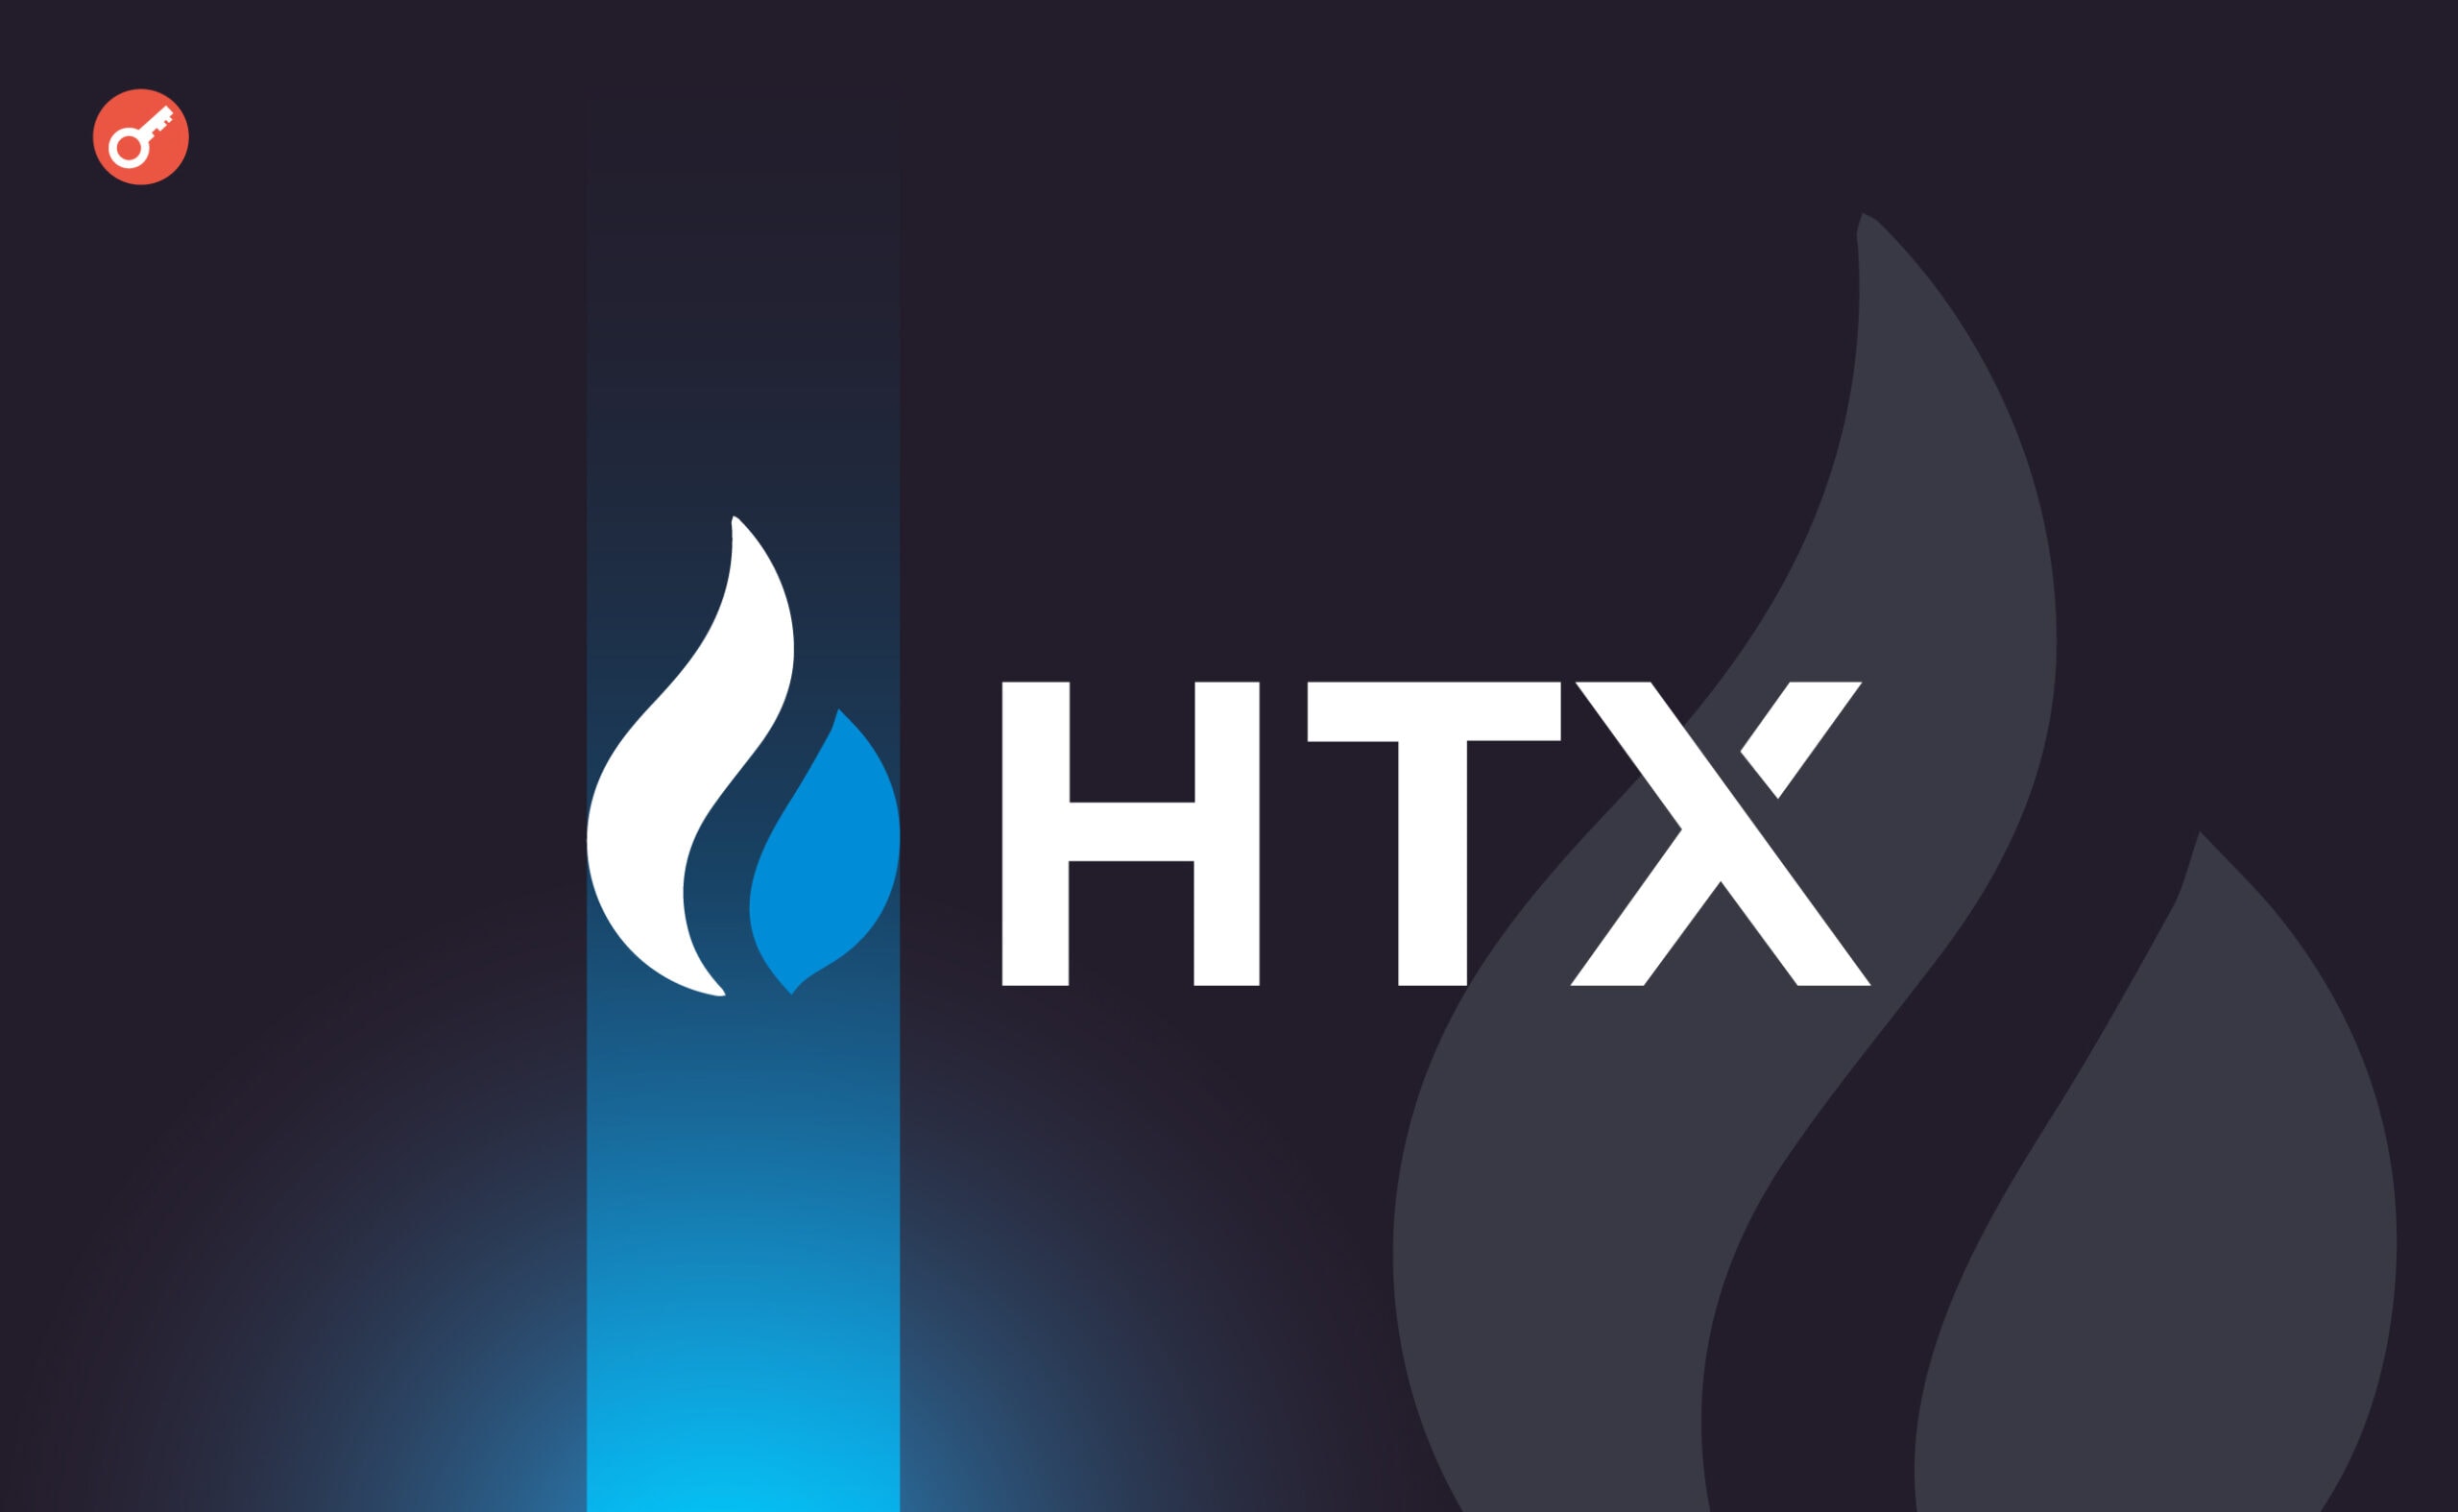 HTX втратила внаслідок зламу $8 млн. Головний колаж новини.